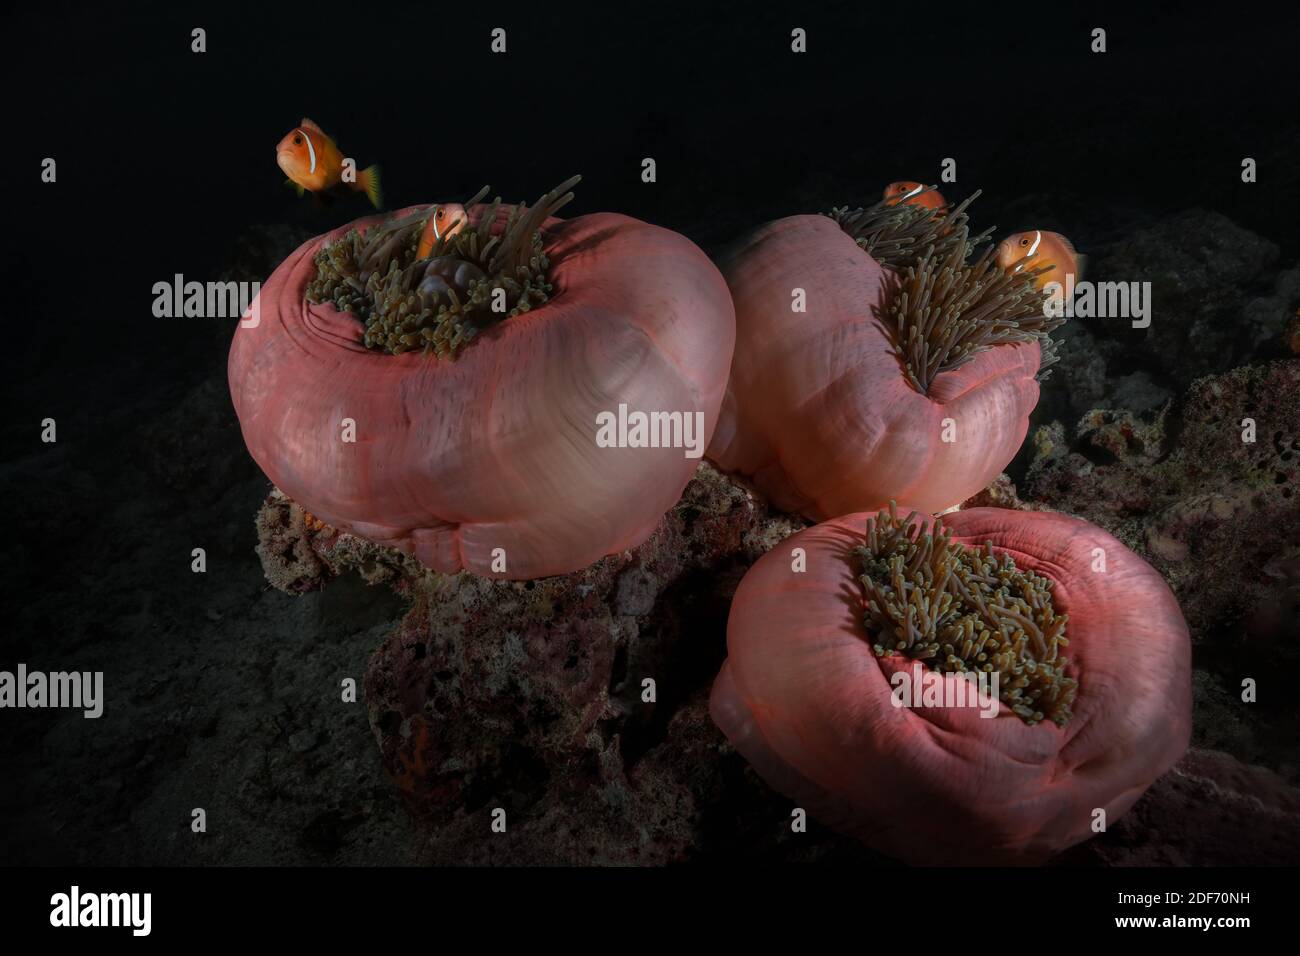 Anemone fischt symbiotische Mutualismen mit Seeanemonen. Wunderbare und wunderschöne Unterwasserwelt der Malediven. Stockfoto